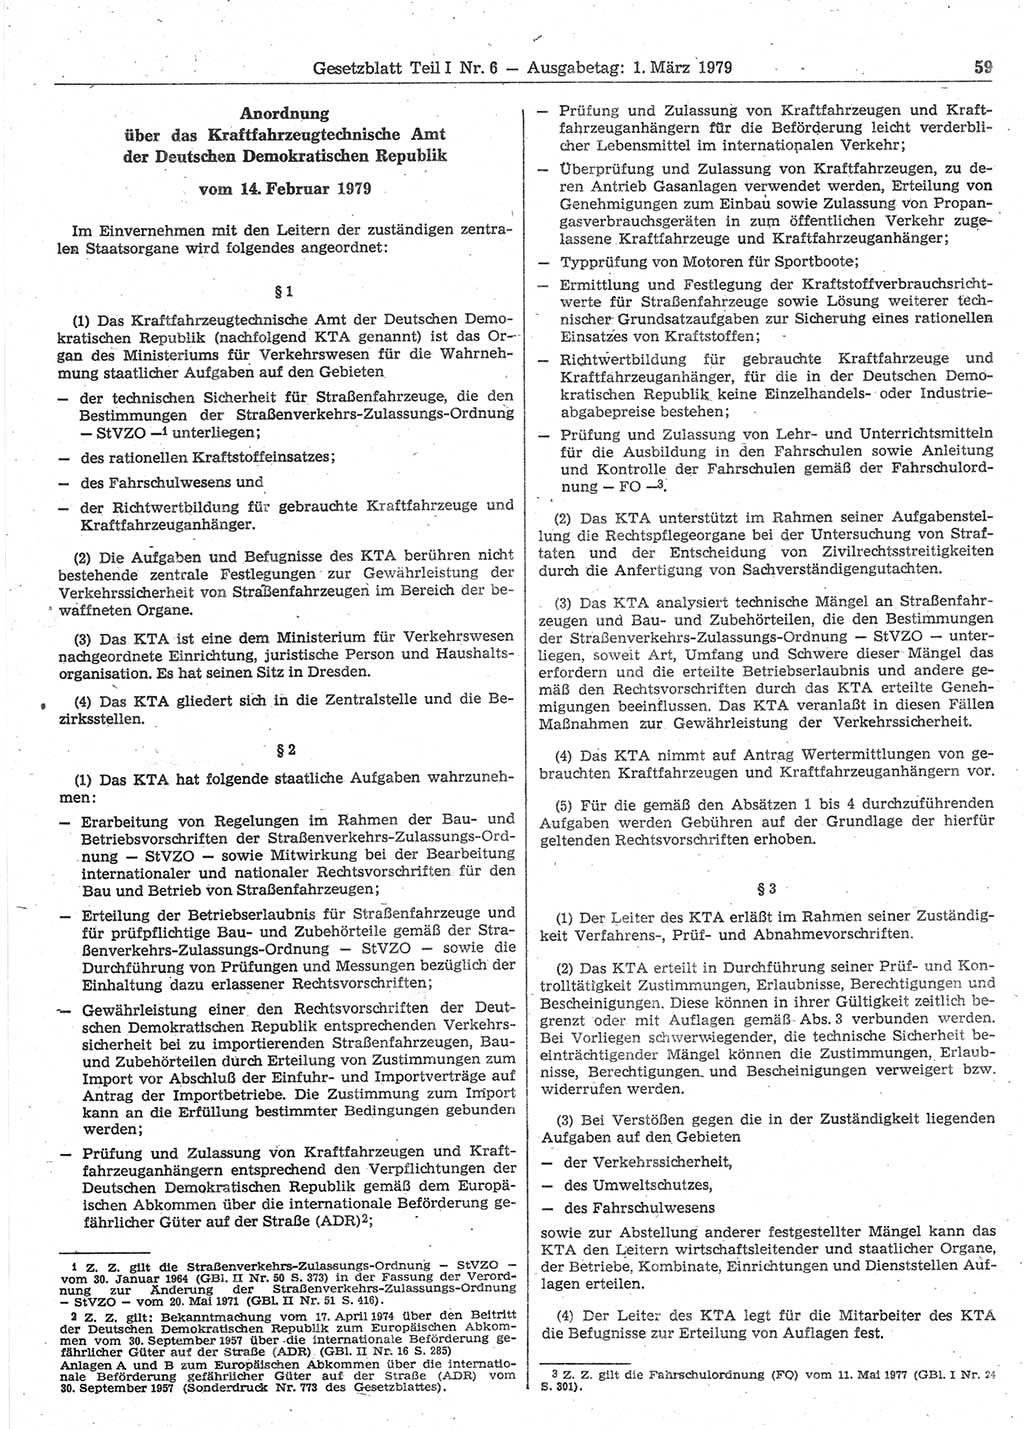 Gesetzblatt (GBl.) der Deutschen Demokratischen Republik (DDR) Teil Ⅰ 1979, Seite 59 (GBl. DDR Ⅰ 1979, S. 59)